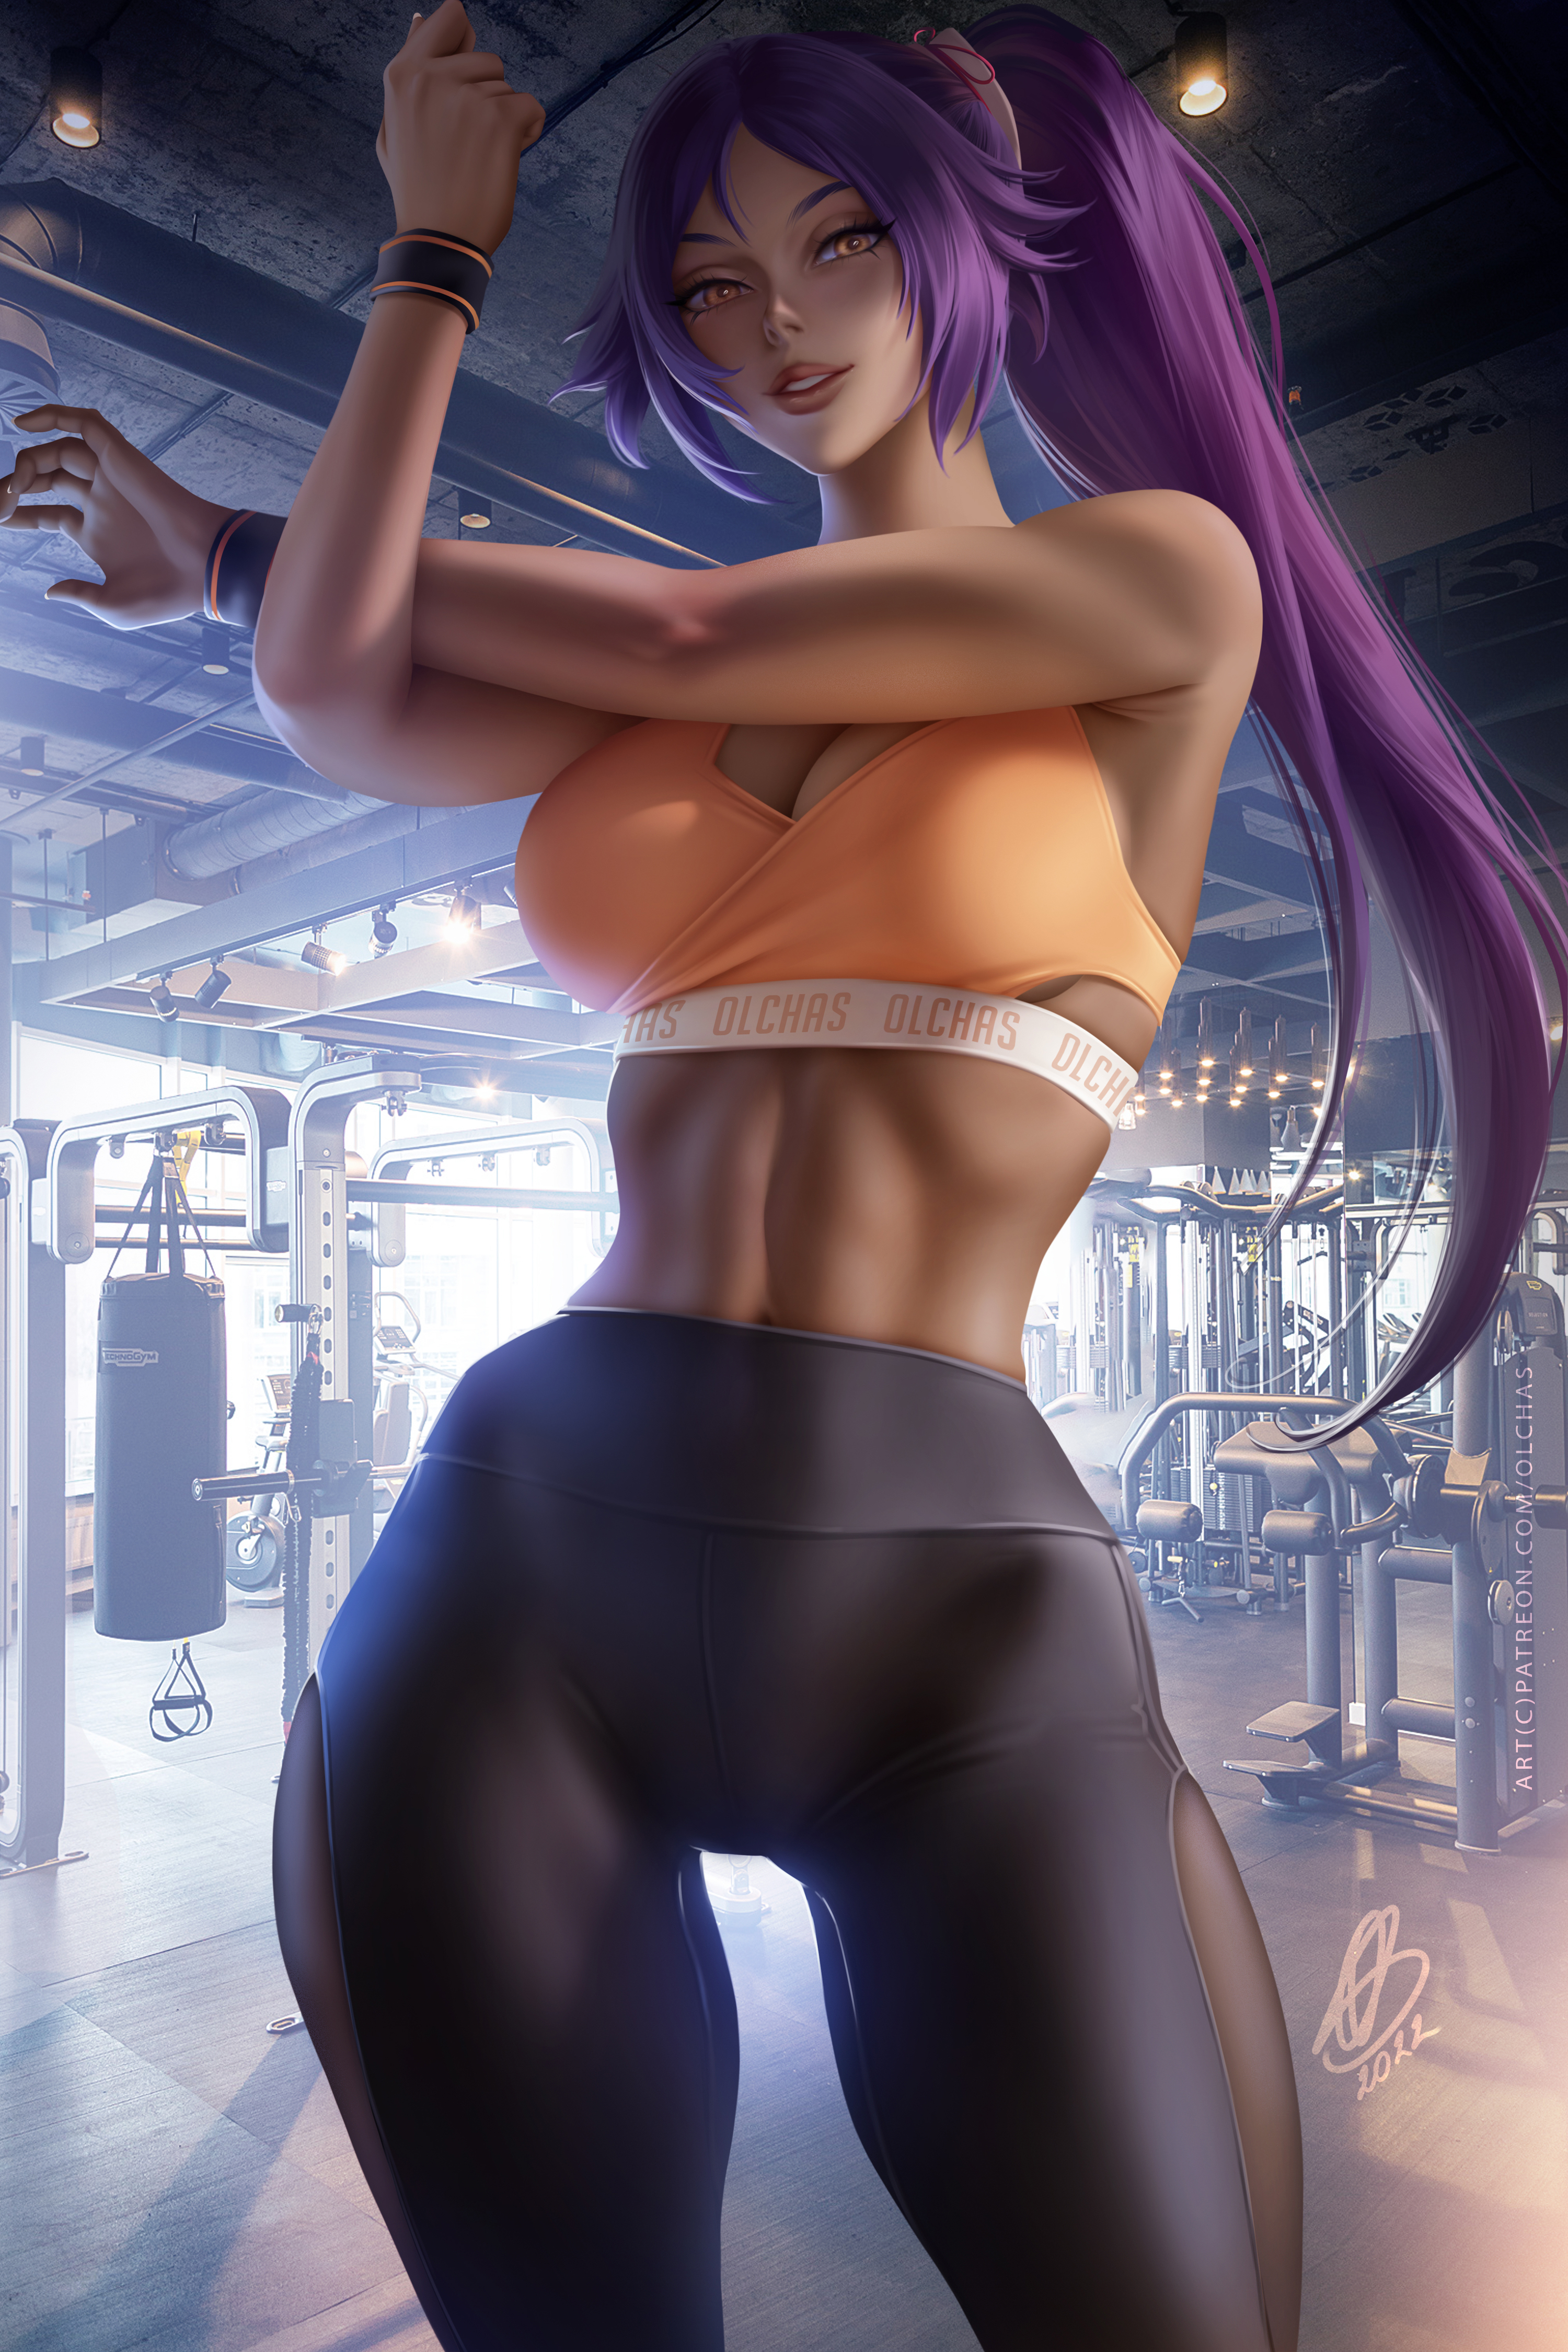 Anime 3000x4500 Shihouin Yoruichi Bleach anime anime girls gyms sportswear gym clothes sports bra leggings ponytail 2D artwork drawing fan art OlchaS